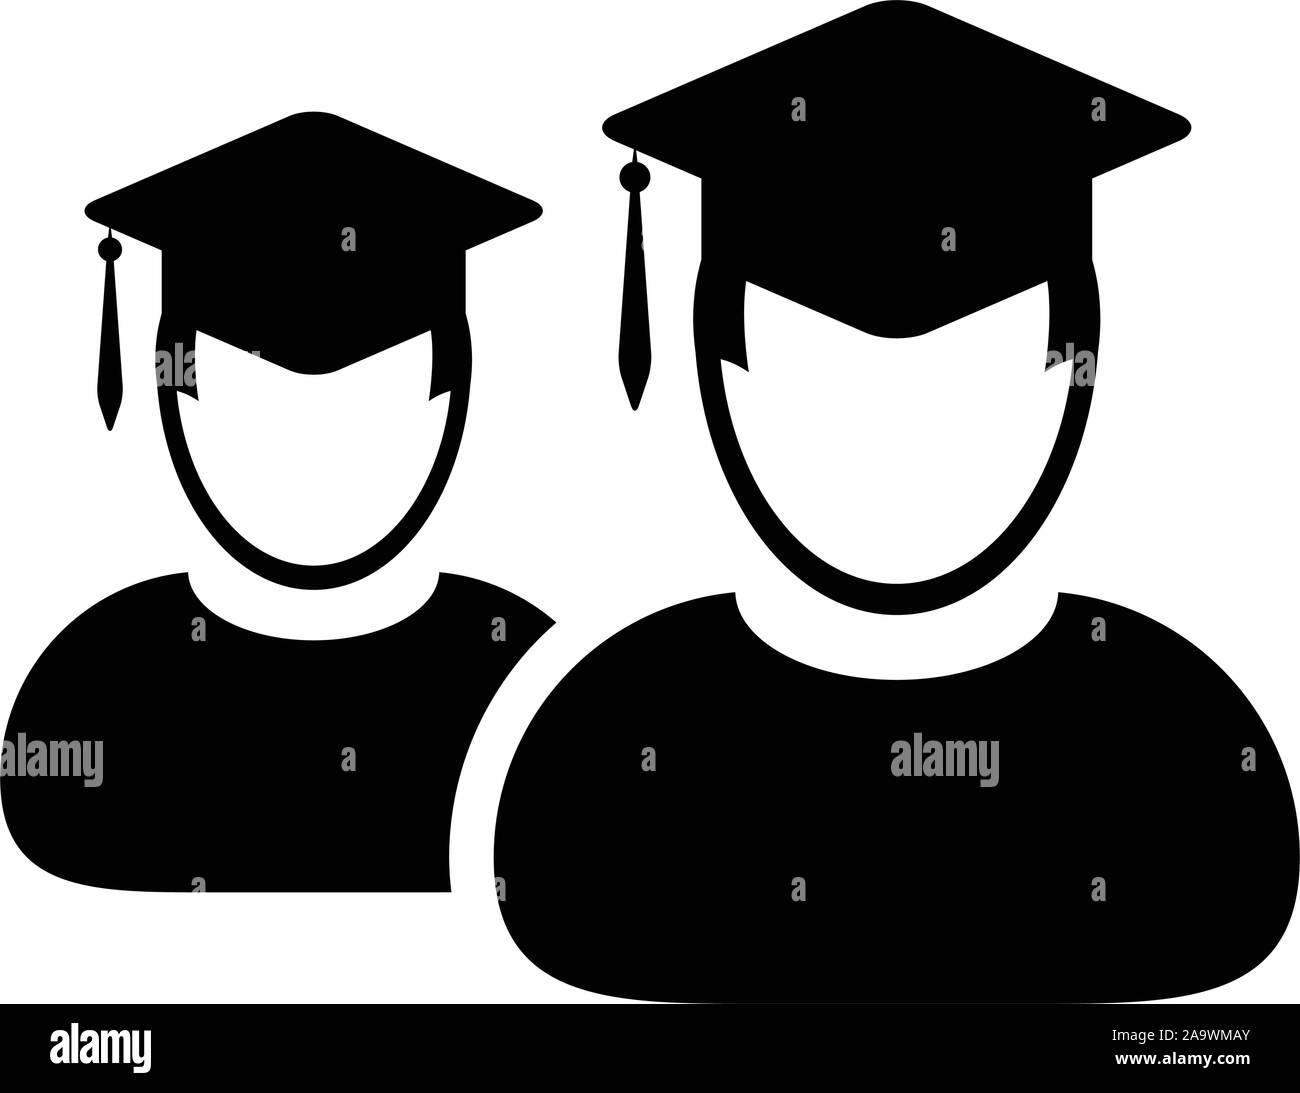 Icône d'étudiant vecteur mâle groupe de personne profil avatar avec le symbole de chapeau de mortier pour l'école, l'université et le diplôme universitaire Illustration de Vecteur